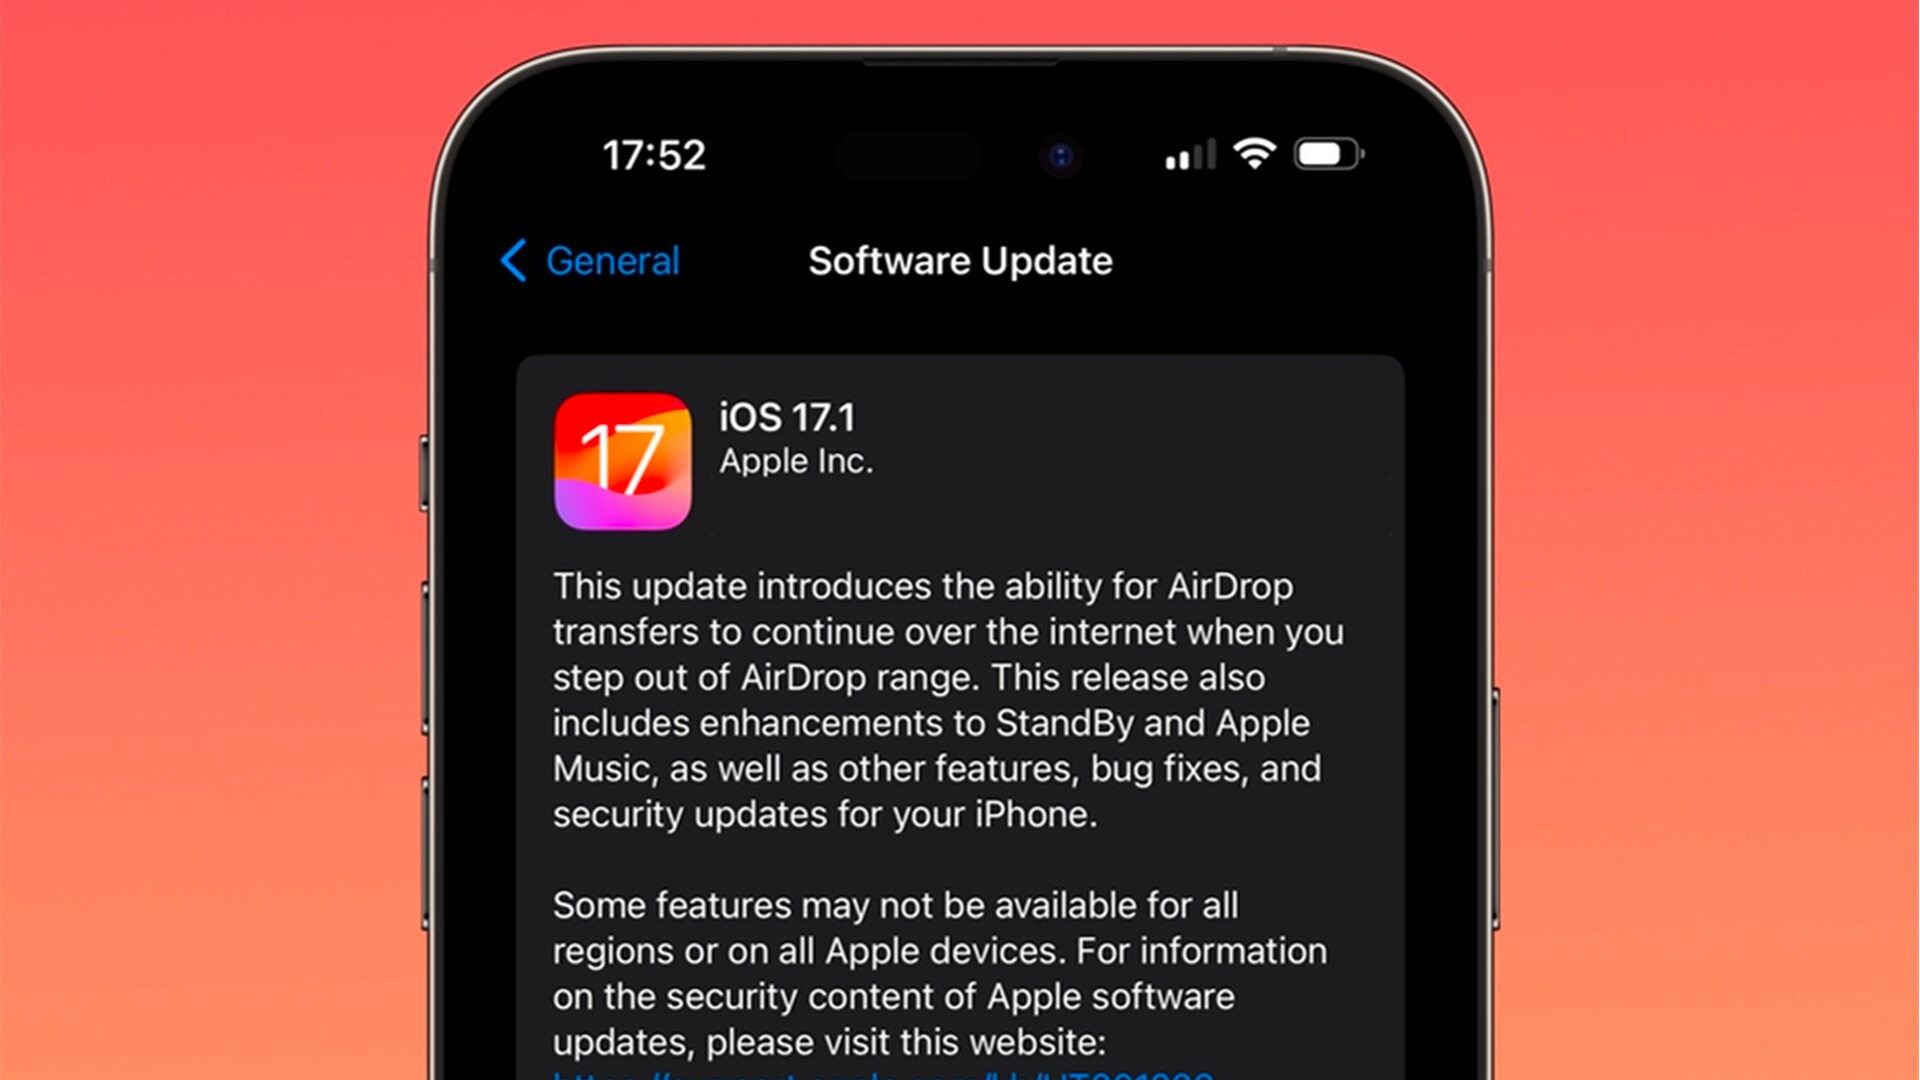 اپل iOS 17.1 را با بهبودهایی در AirDrop، StandBy و رفع باگ های اصلی به صورت عمومی منتشر کرد.